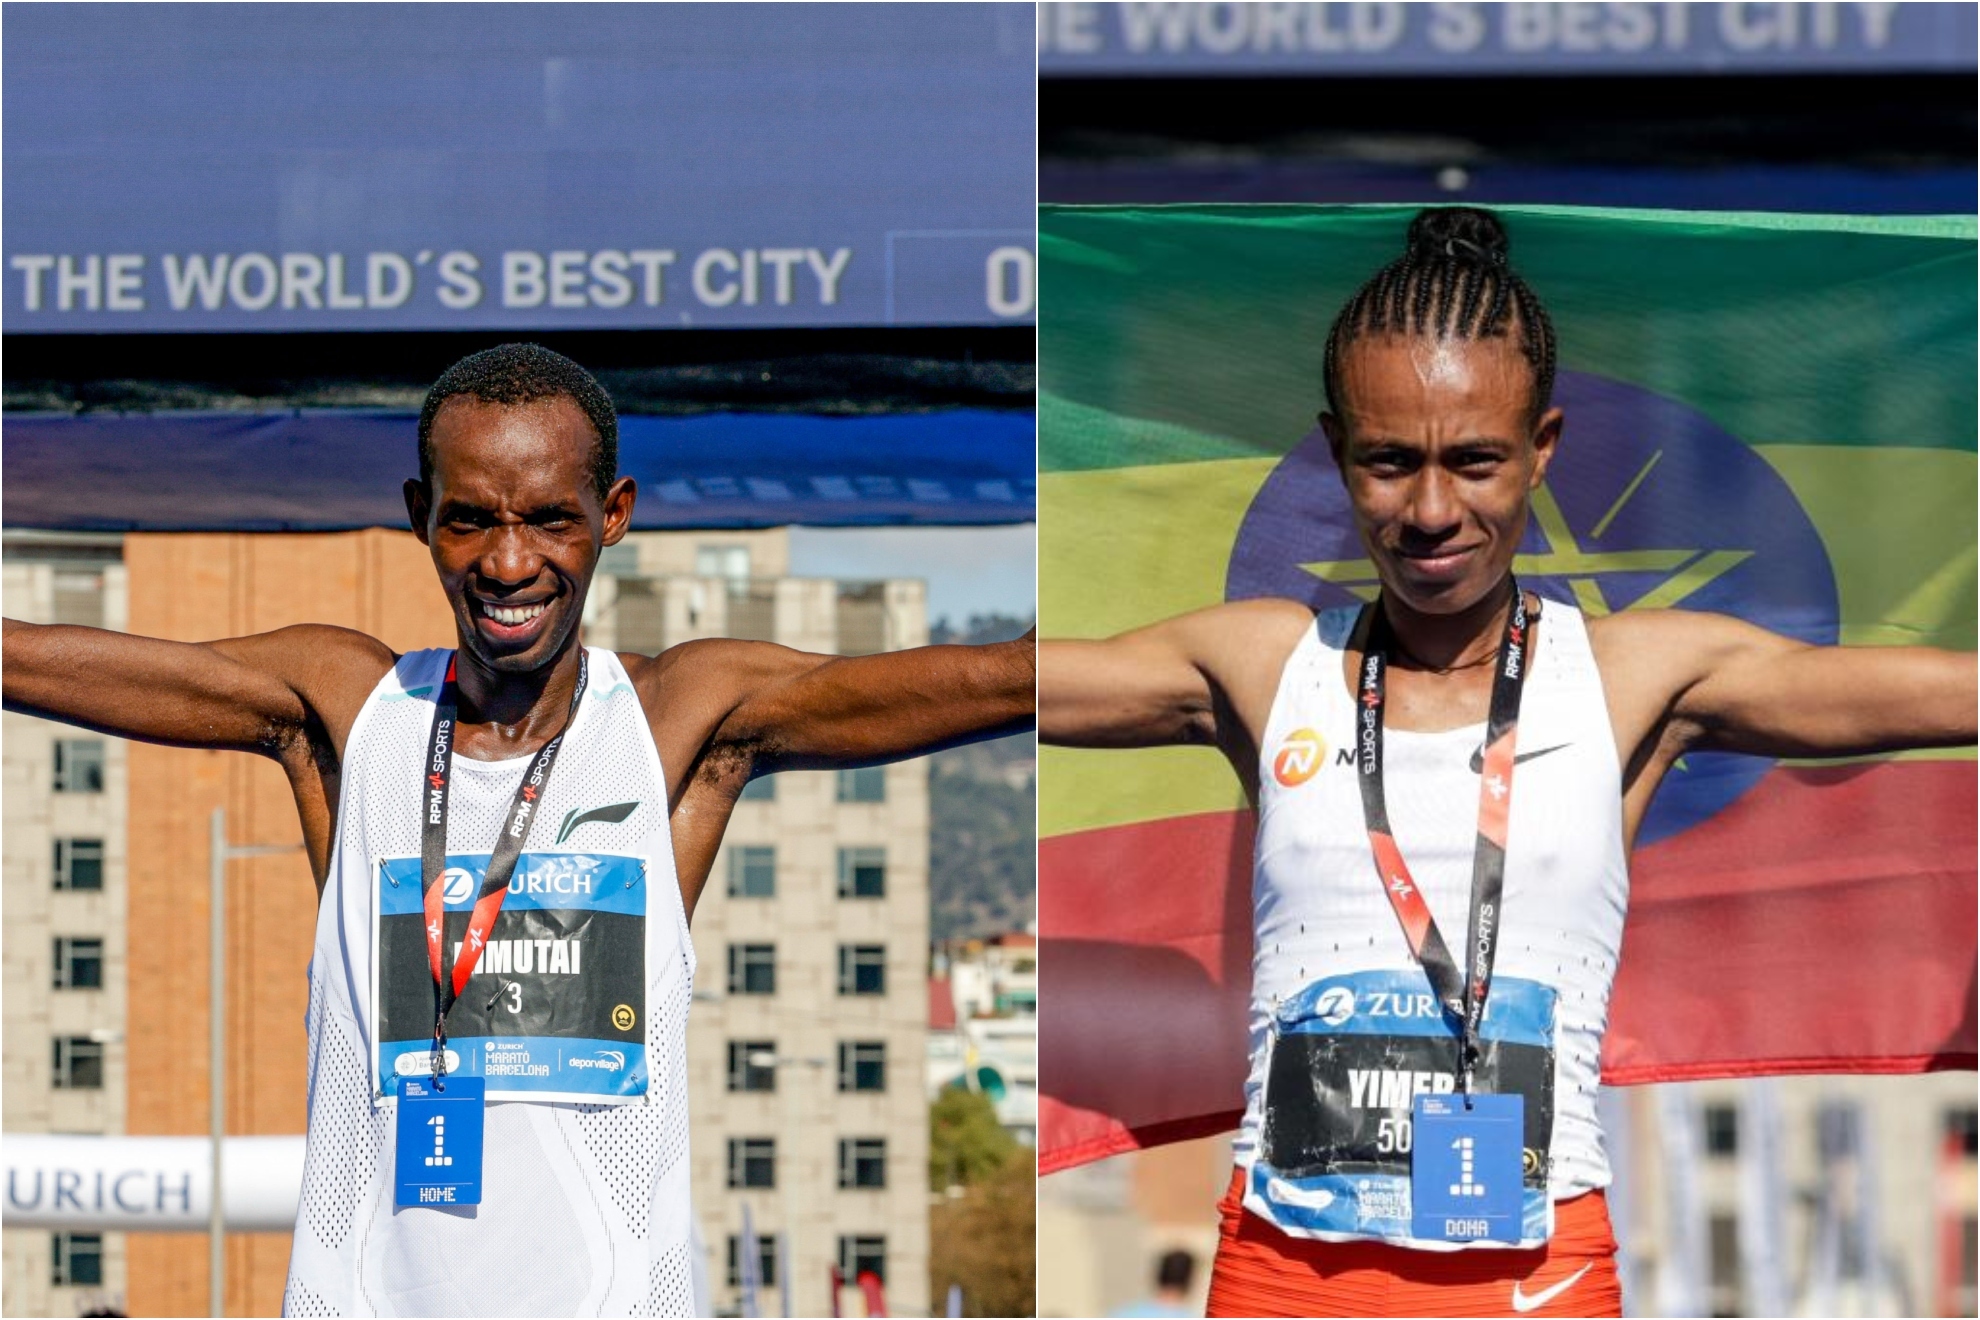 Kimutai y Yimer ganan el maratn de Barcelona con nuevos rcords de la prueba